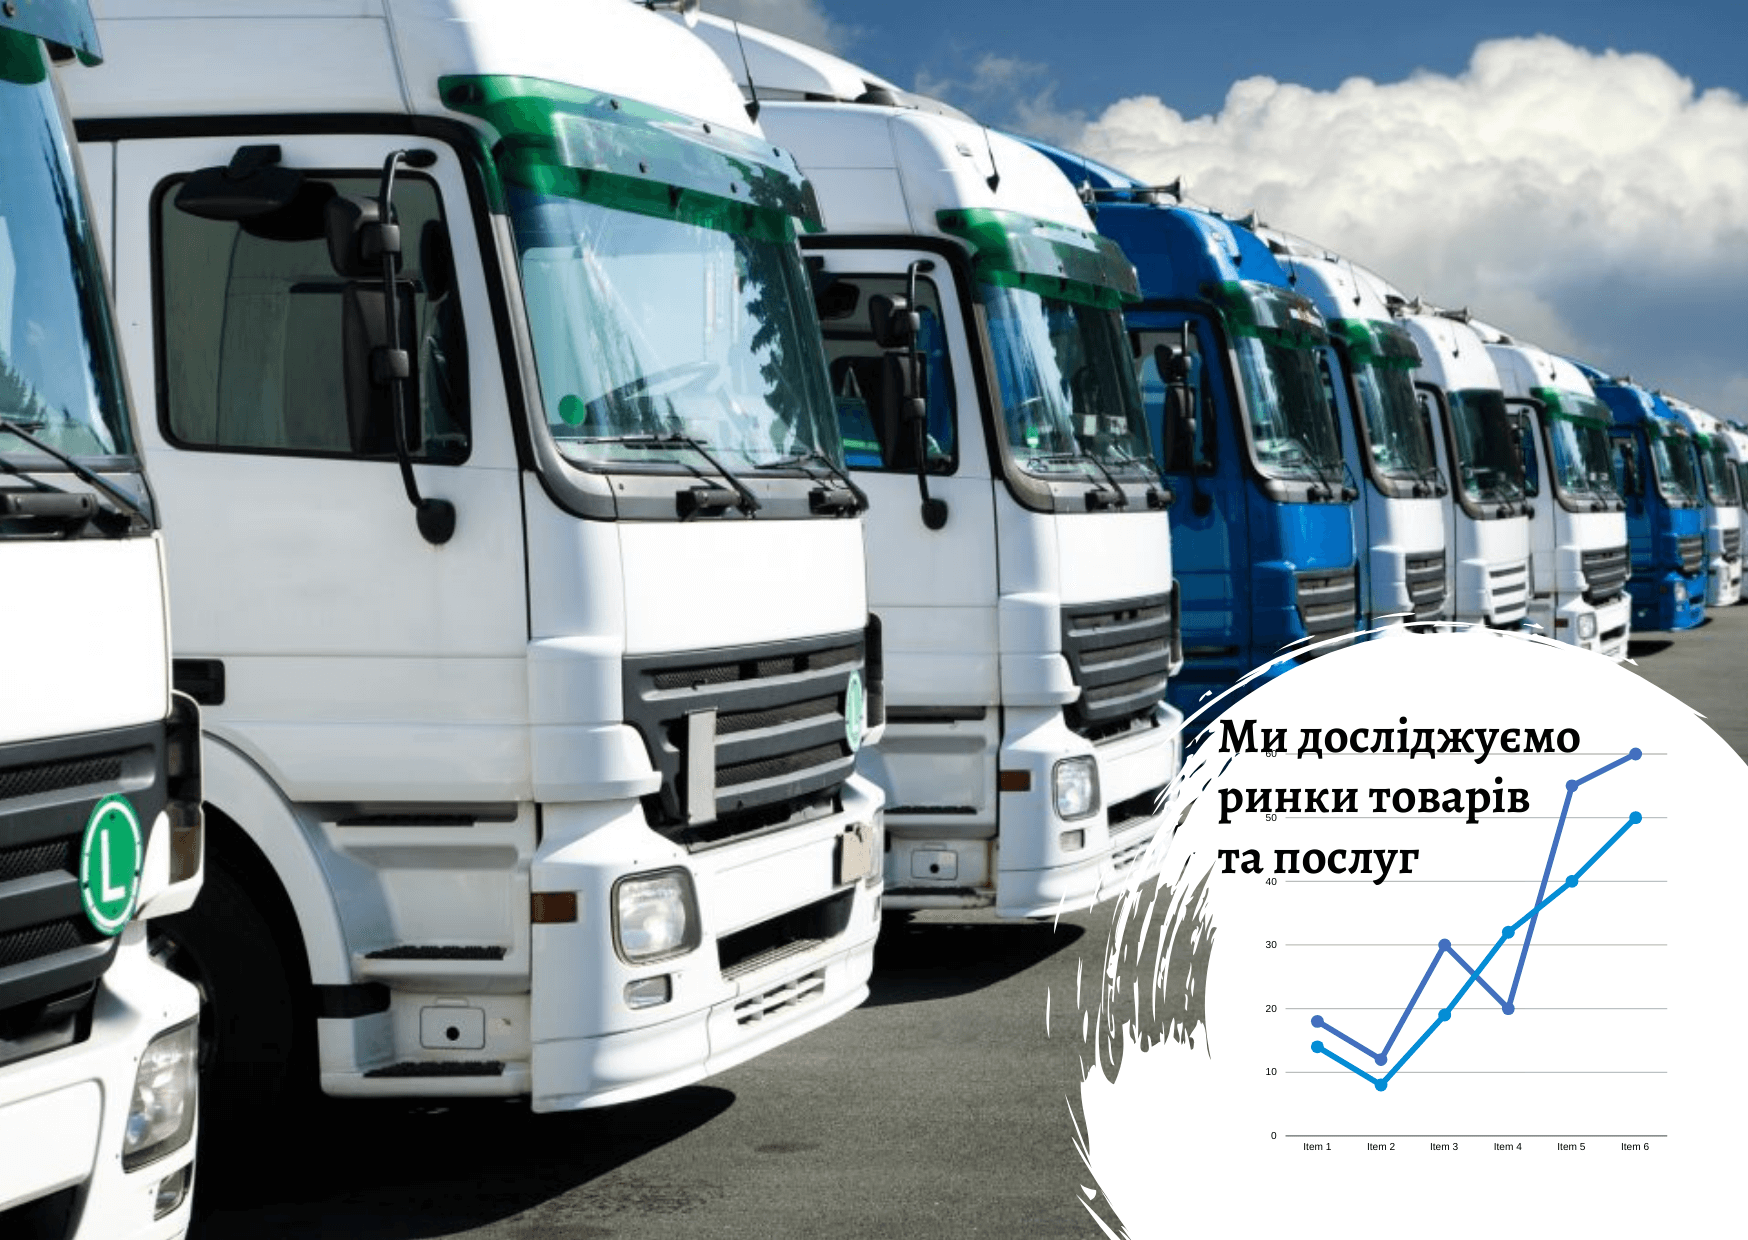 Ukrainian 3PL services market: main growth drivers